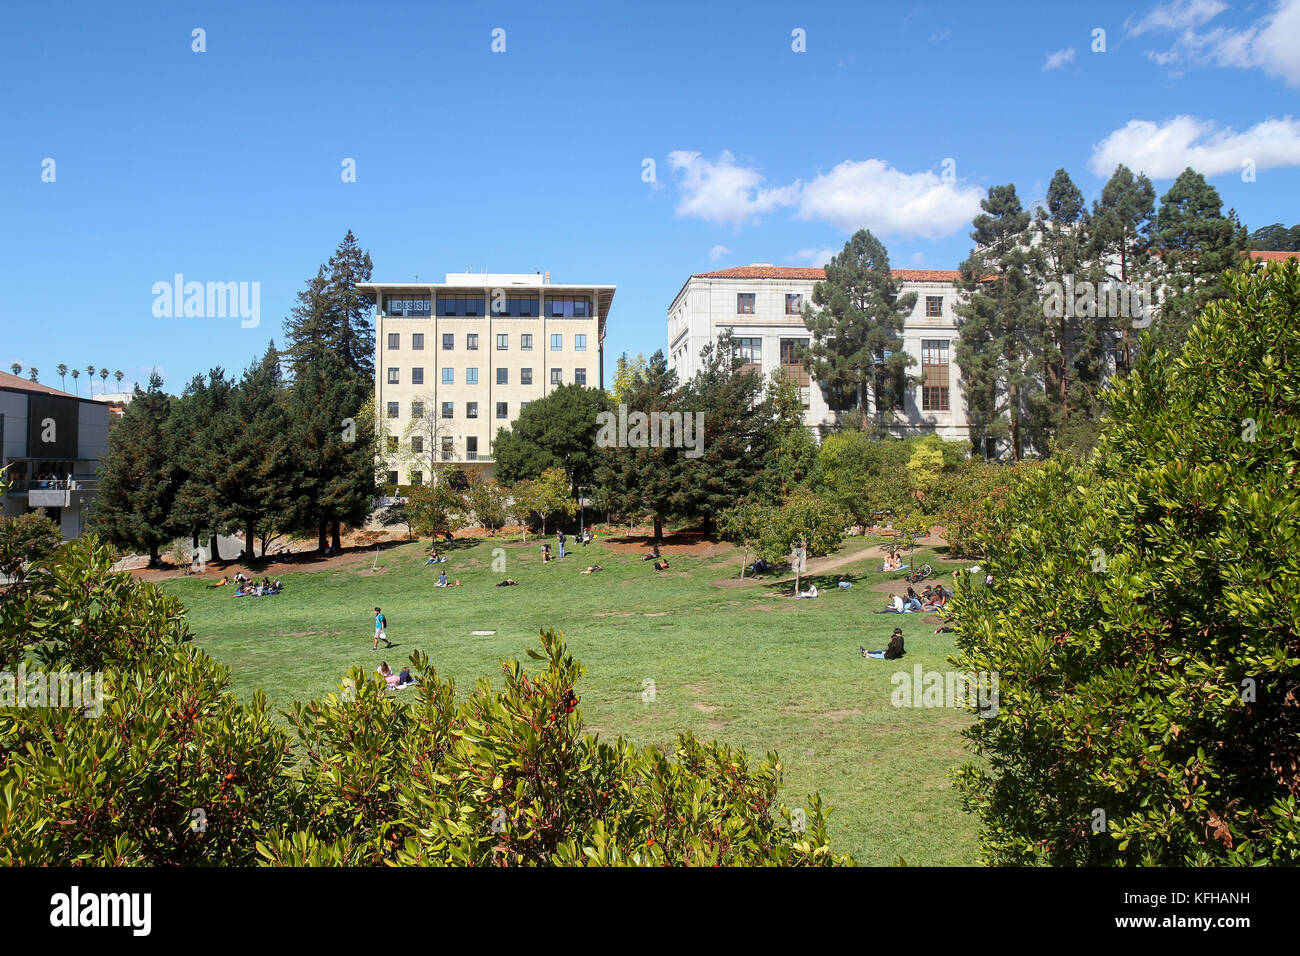 Universität von Kalifornien, Berkeley, Kalifornien, USA Stockfoto